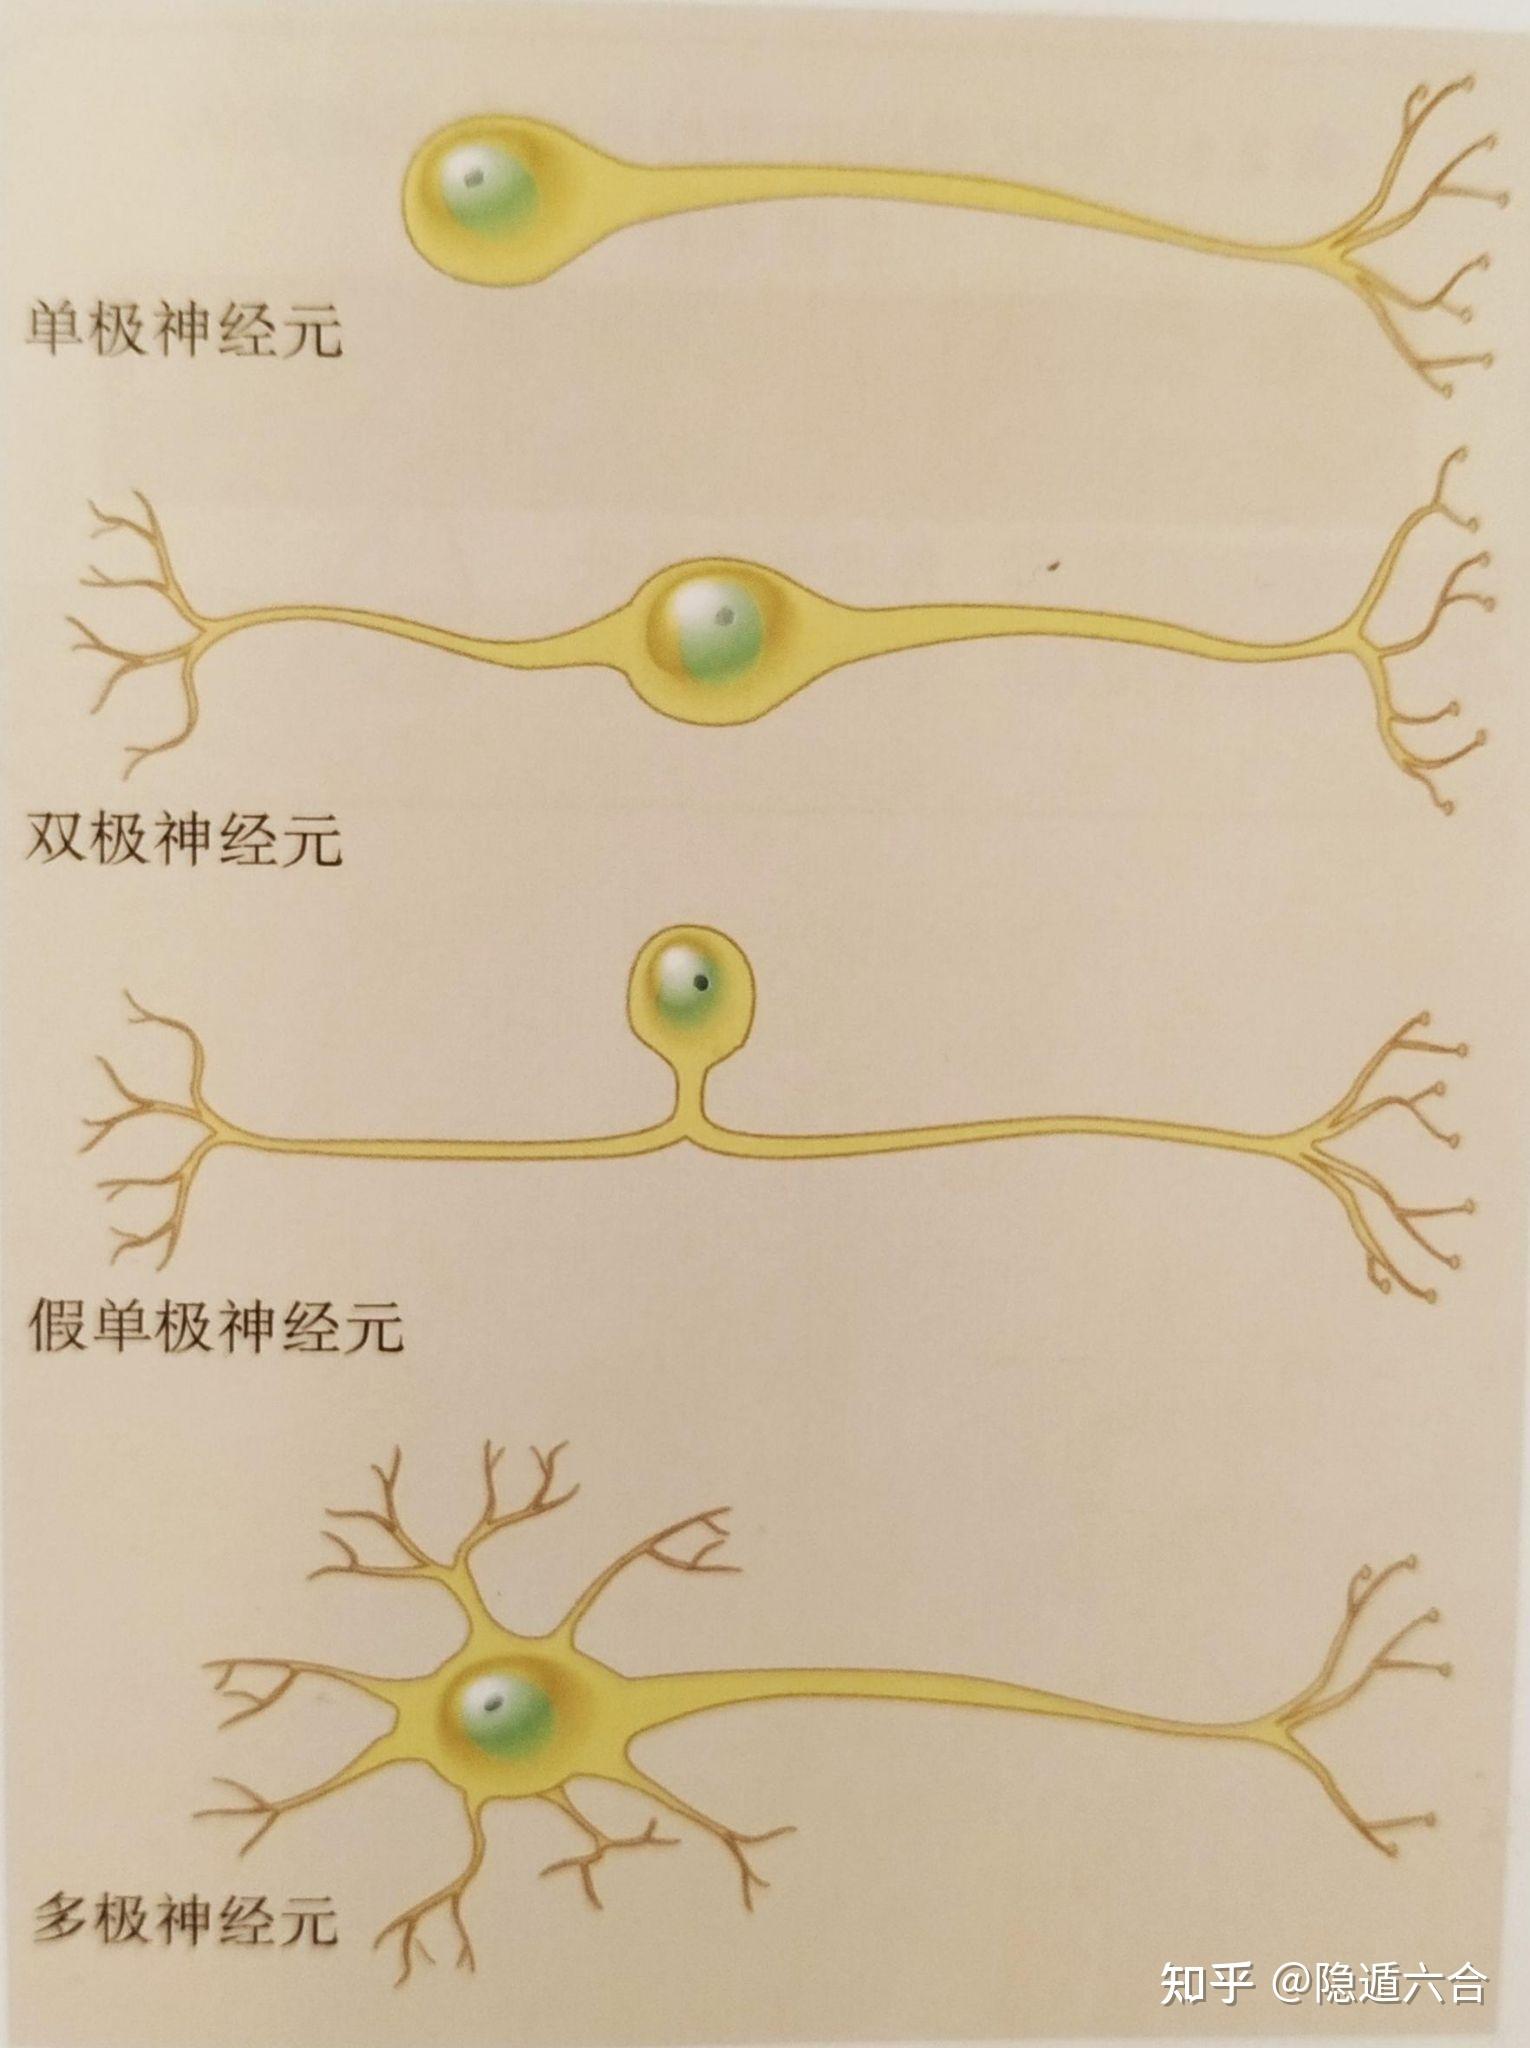 神经节简图图片